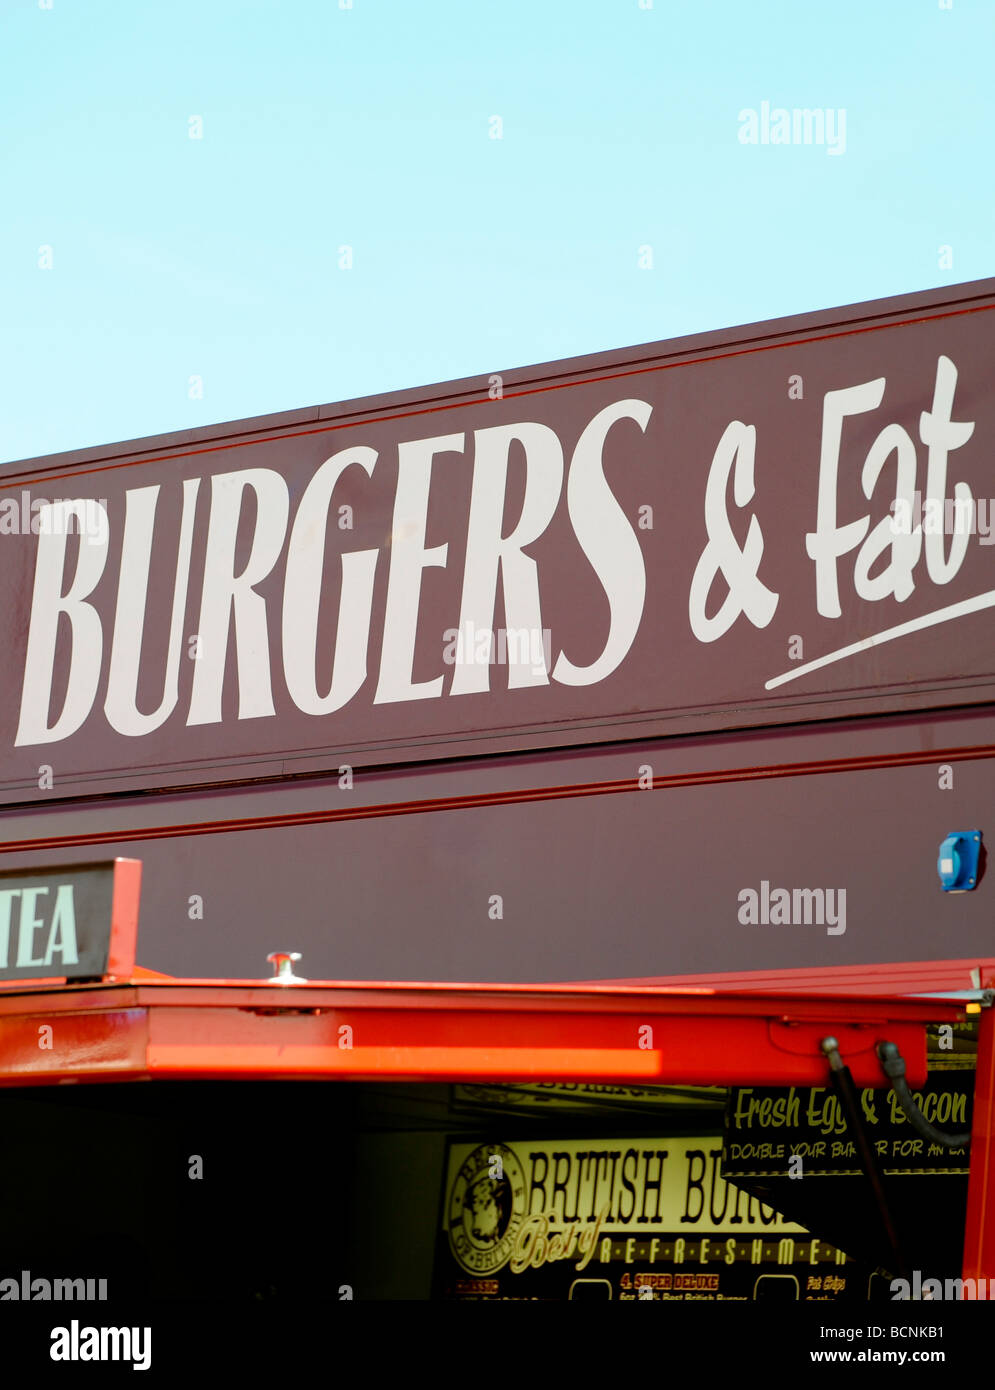 Fetthaltige Lebensmittel: Teil eines Zeichens Burger van liest "Burger und Fett" auf einem Sommerevent in Großbritannien. Bild Jim Holden. Stockfoto